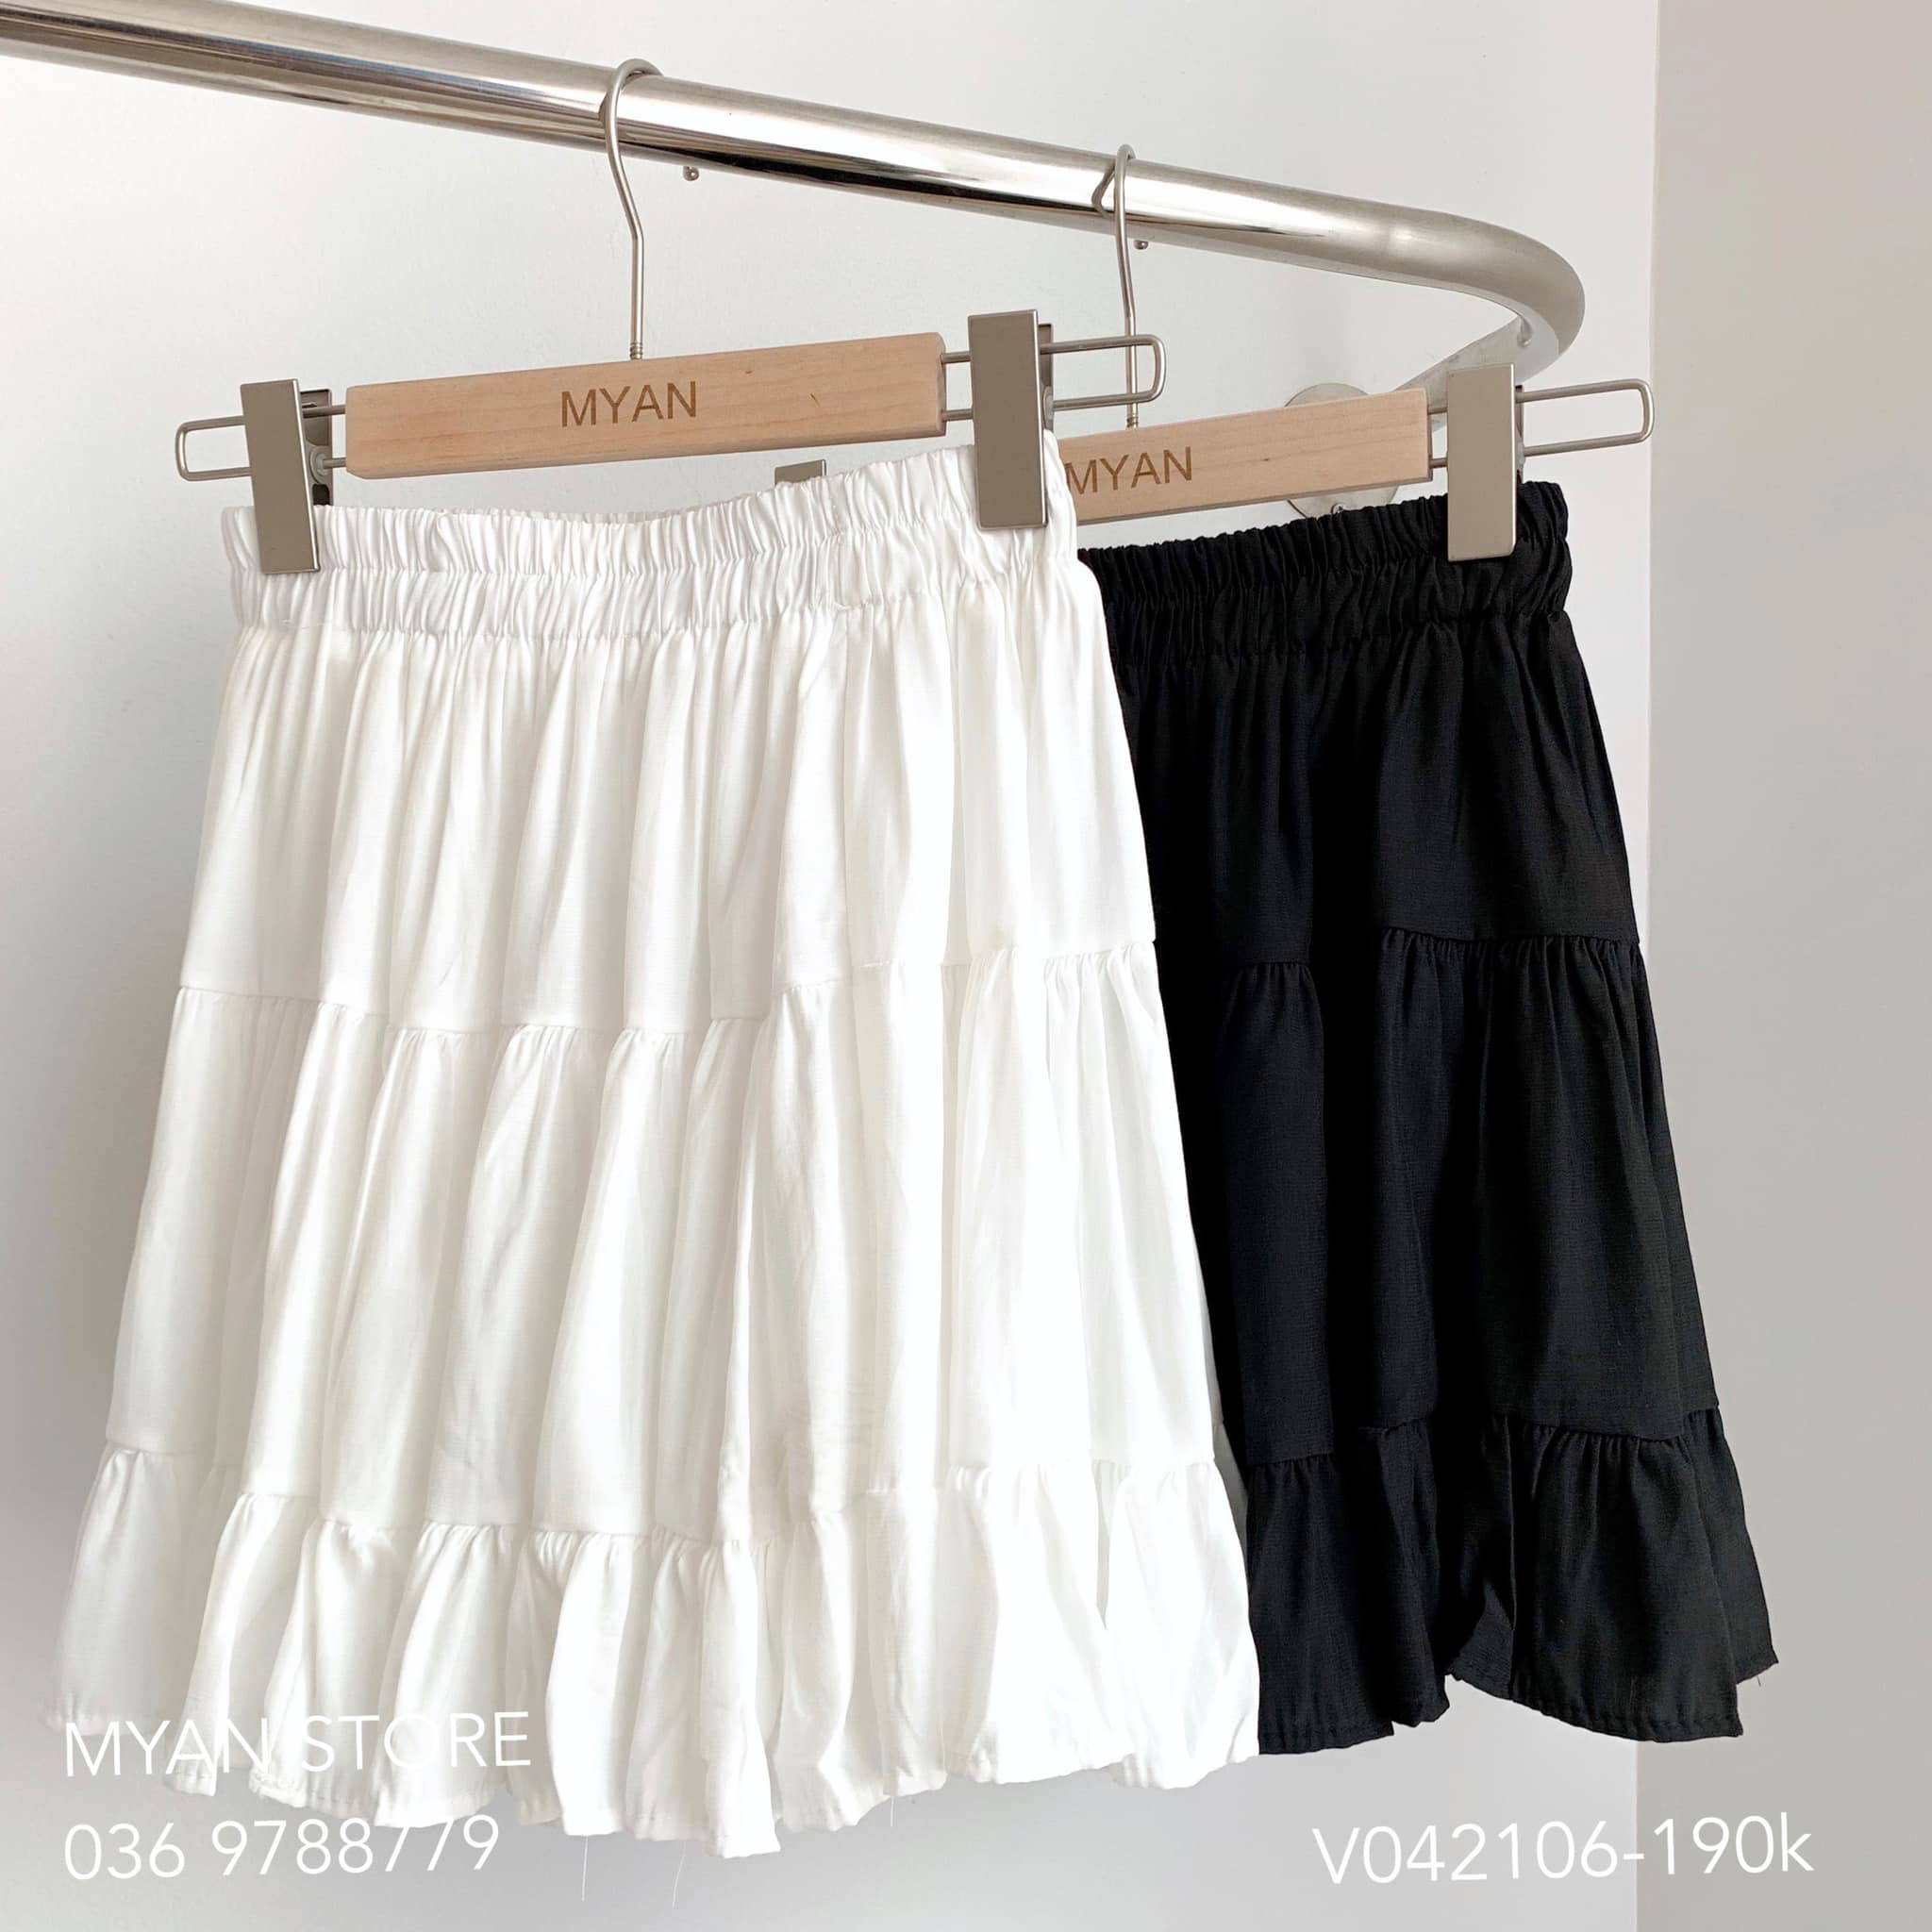 Chân váy xếp ly xòe chữ a màu đen CV06-07 | Thời trang công sở K&K Fashion